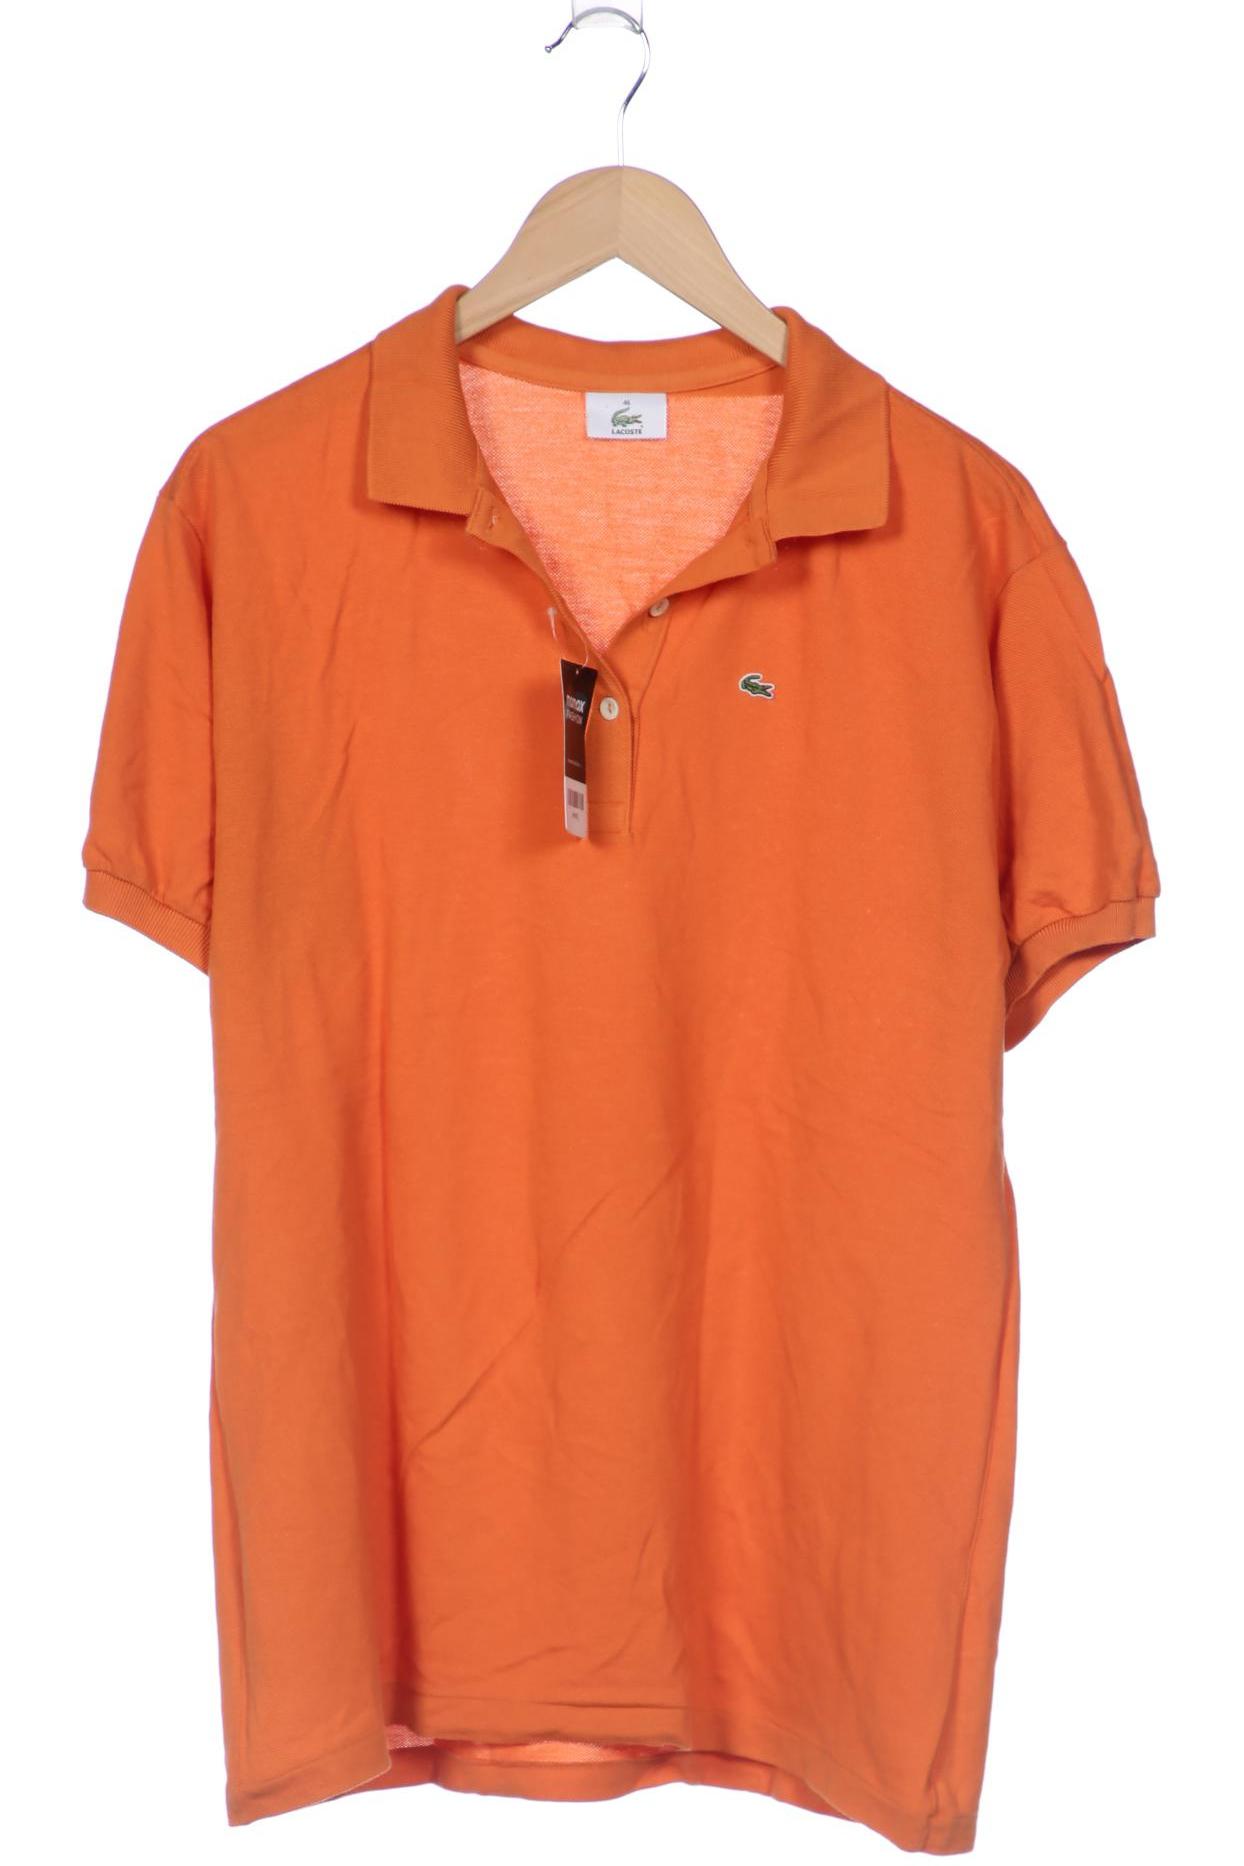 Lacoste Damen Poloshirt, orange von Lacoste